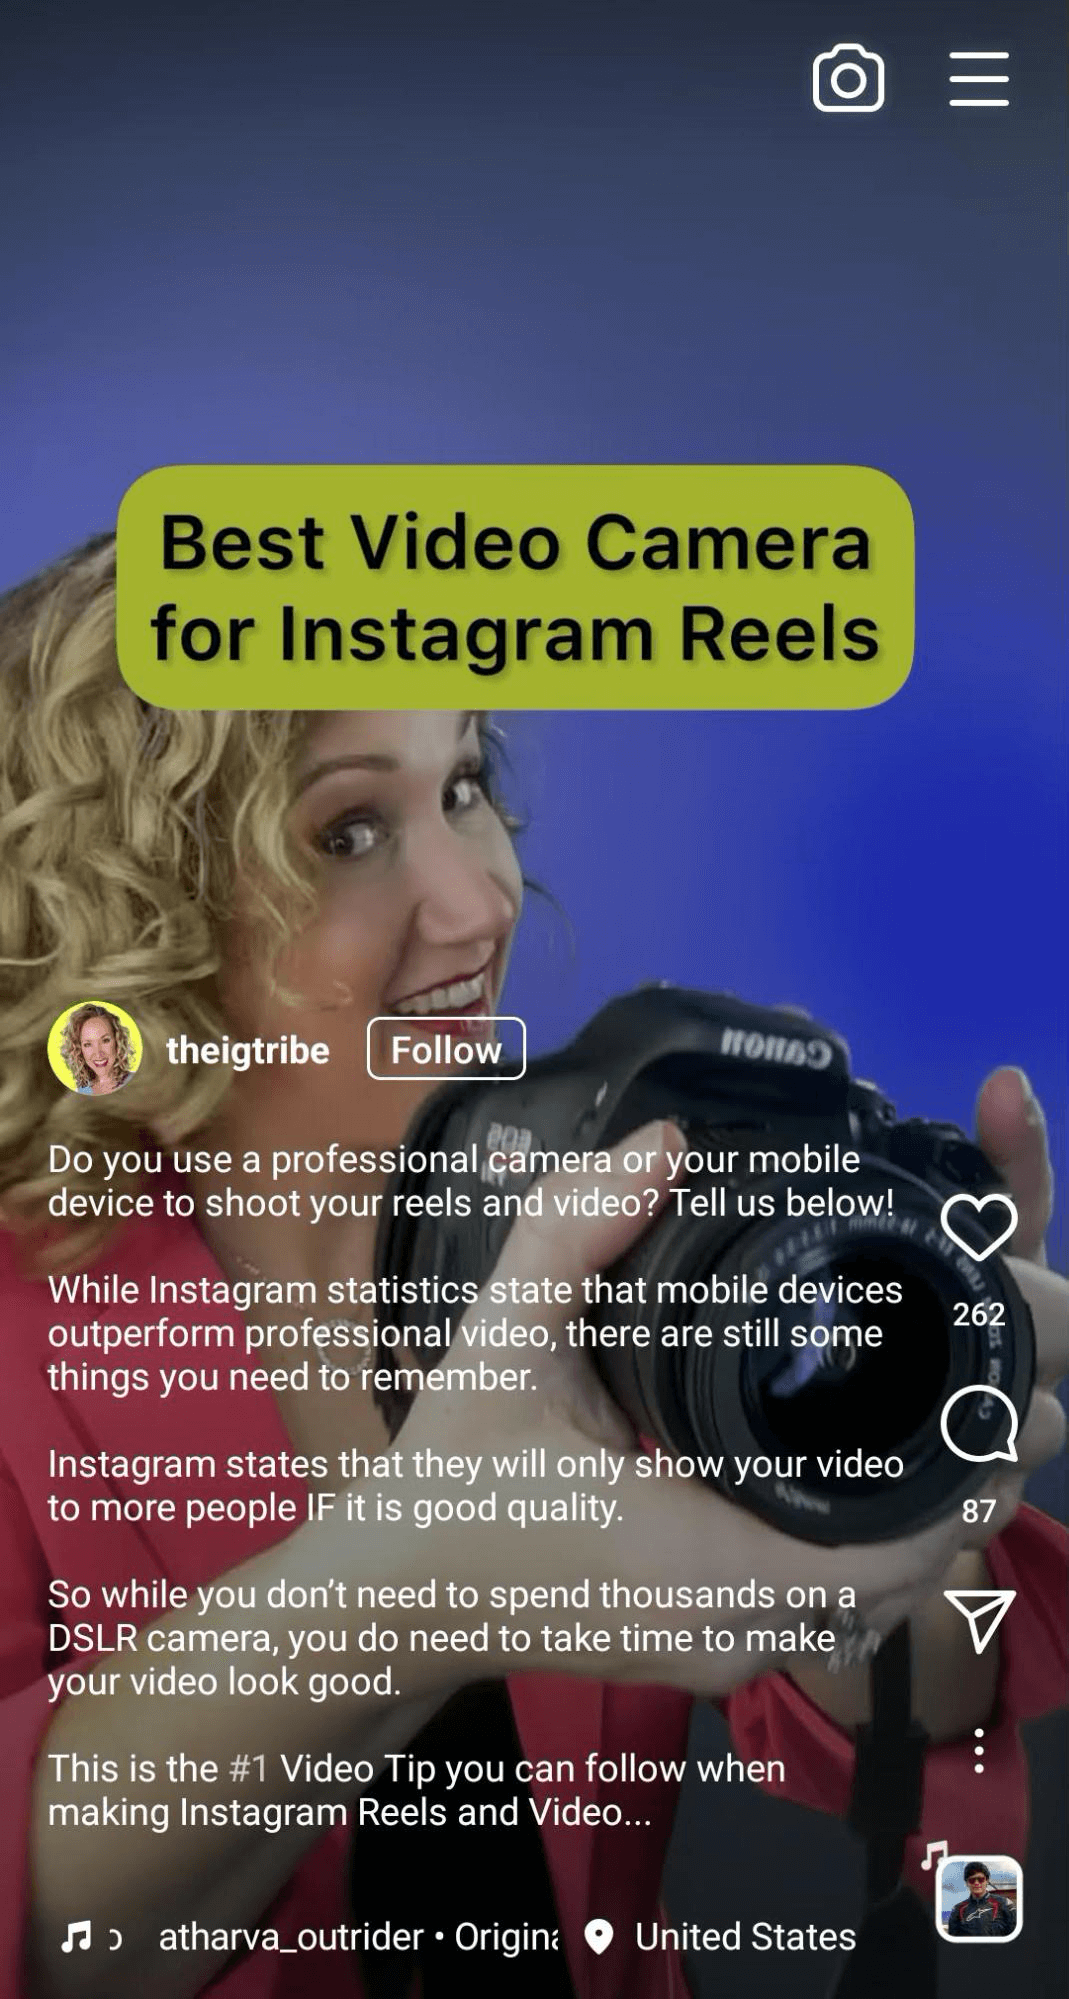 https://www.socialmediaexaminer.com/wp-content/uploads/2022/01/instagram-reel-with-expert-tips.png